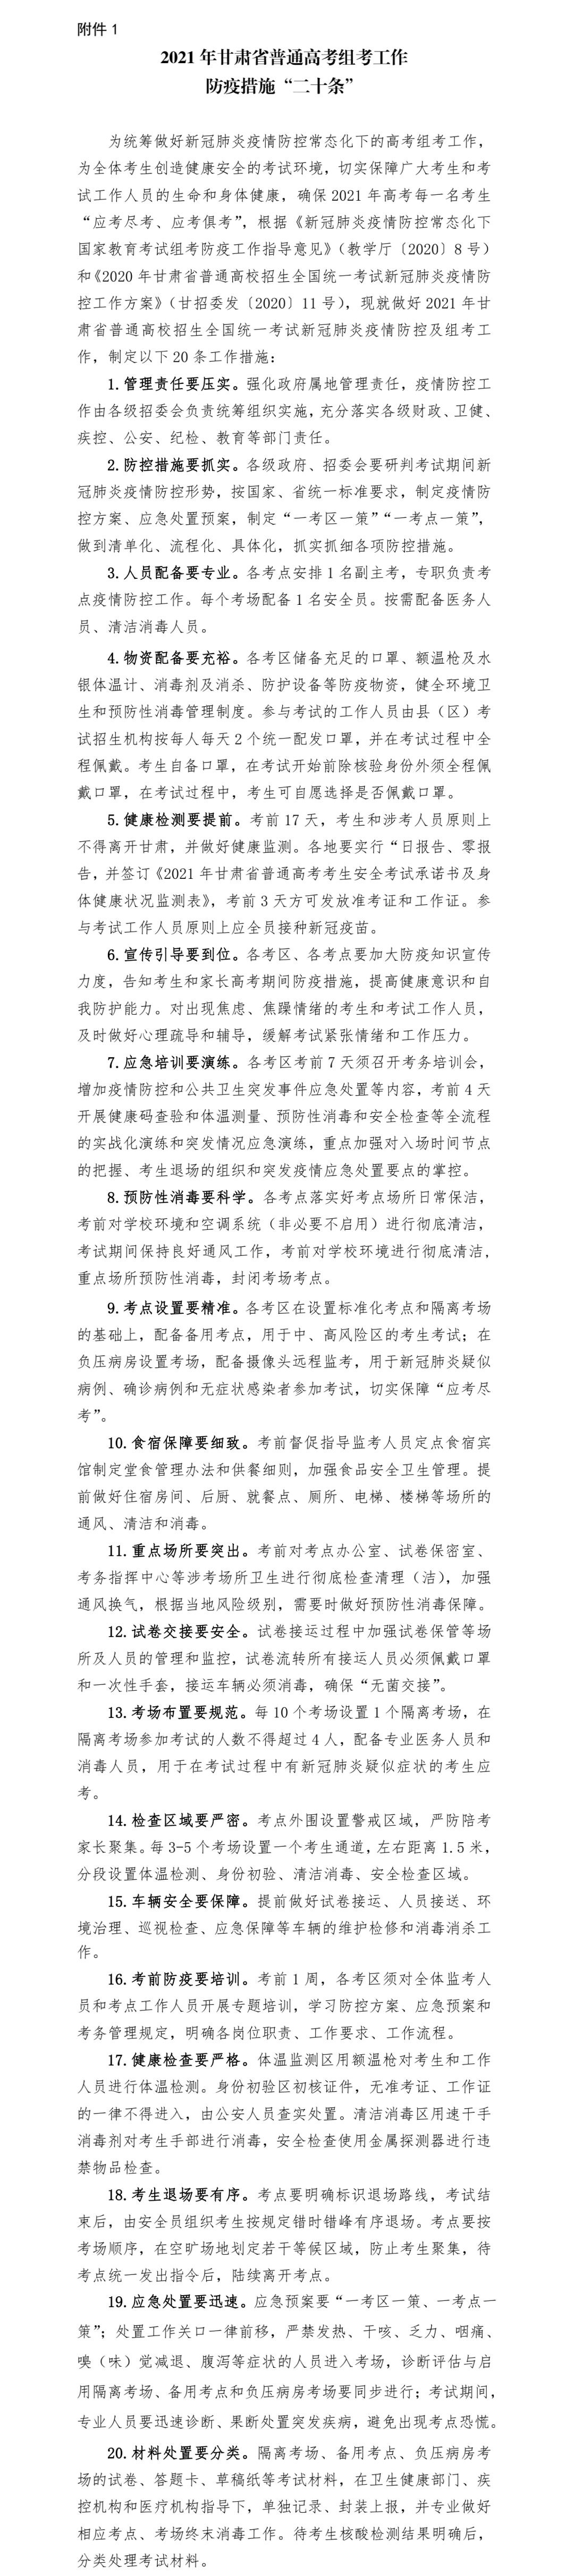 2021年甘肃省普通高考组考工作防疫措施“二十条”